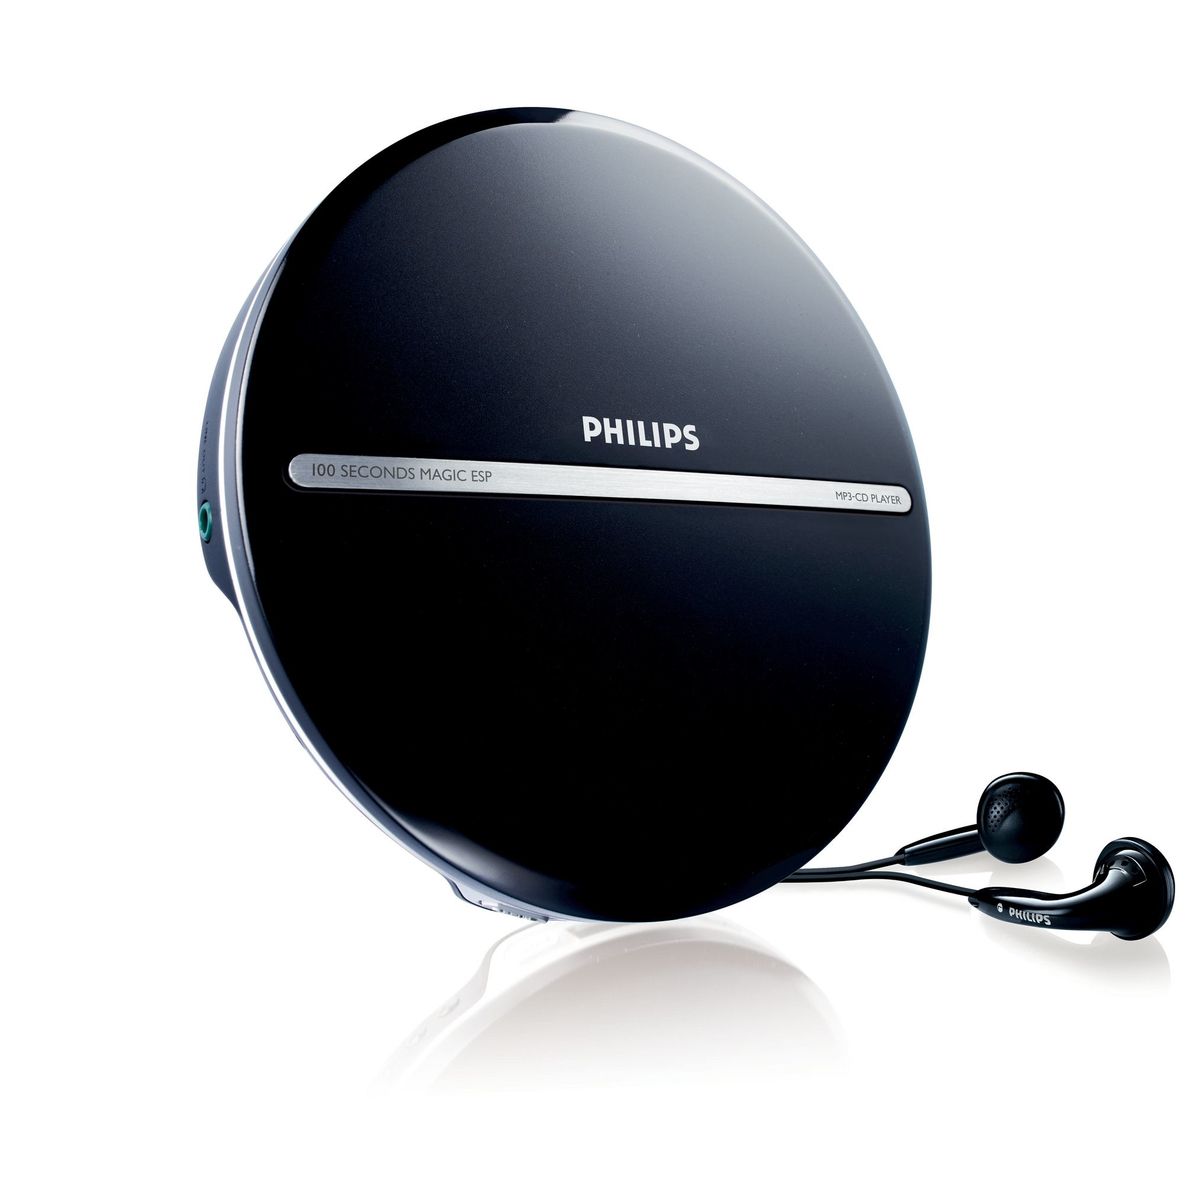 Проигрыватель филипс. Портативный CD плеер Philips Exp. Philips exp2546. Плеер Philips exp2546. CD плеер Philips ax1101.